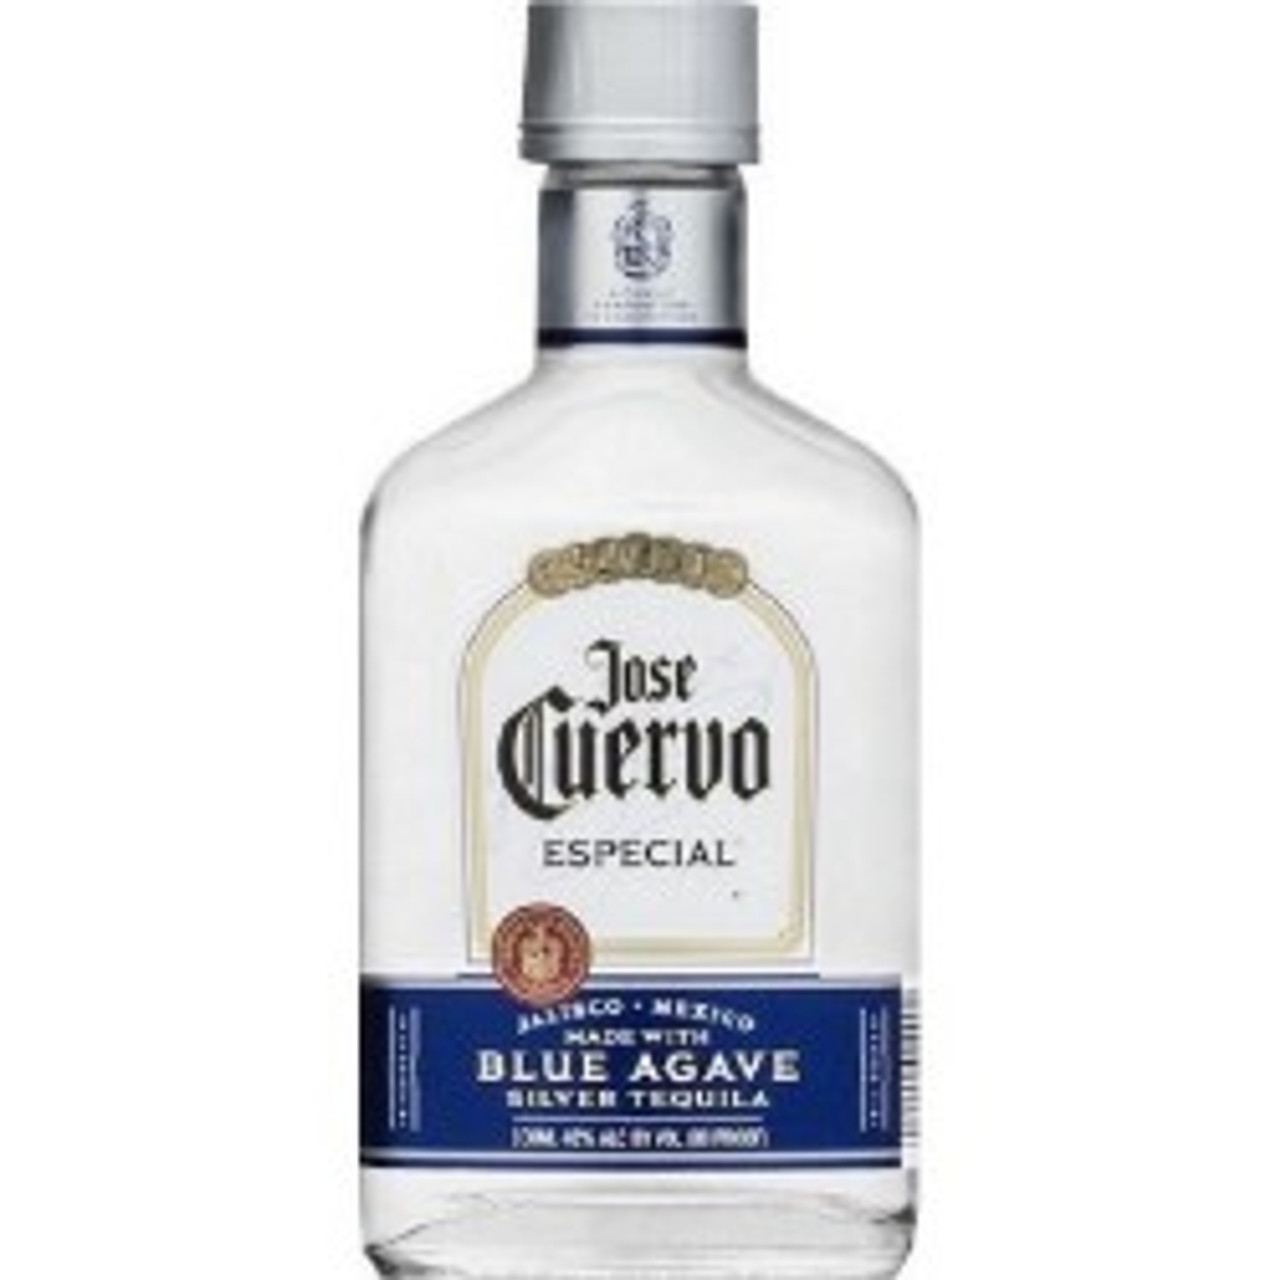 Jose Cuervo Especial Silver 100 ML